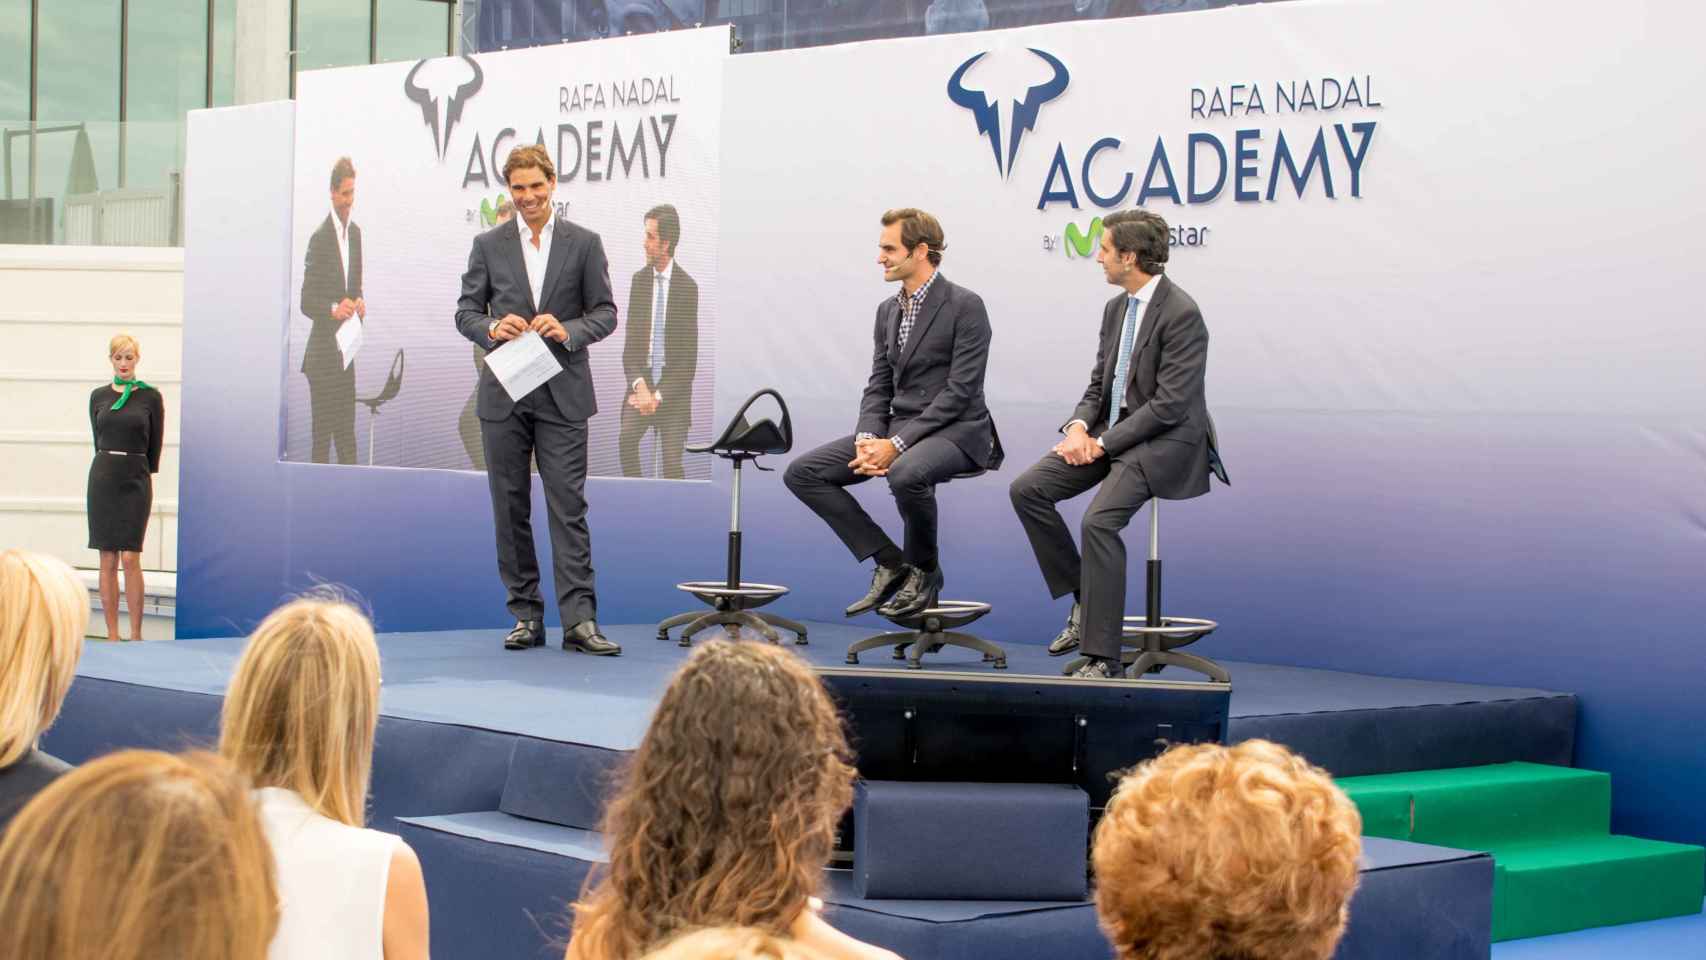 Las mejores imágenes de la presentación de la academia de Rafael Nadal